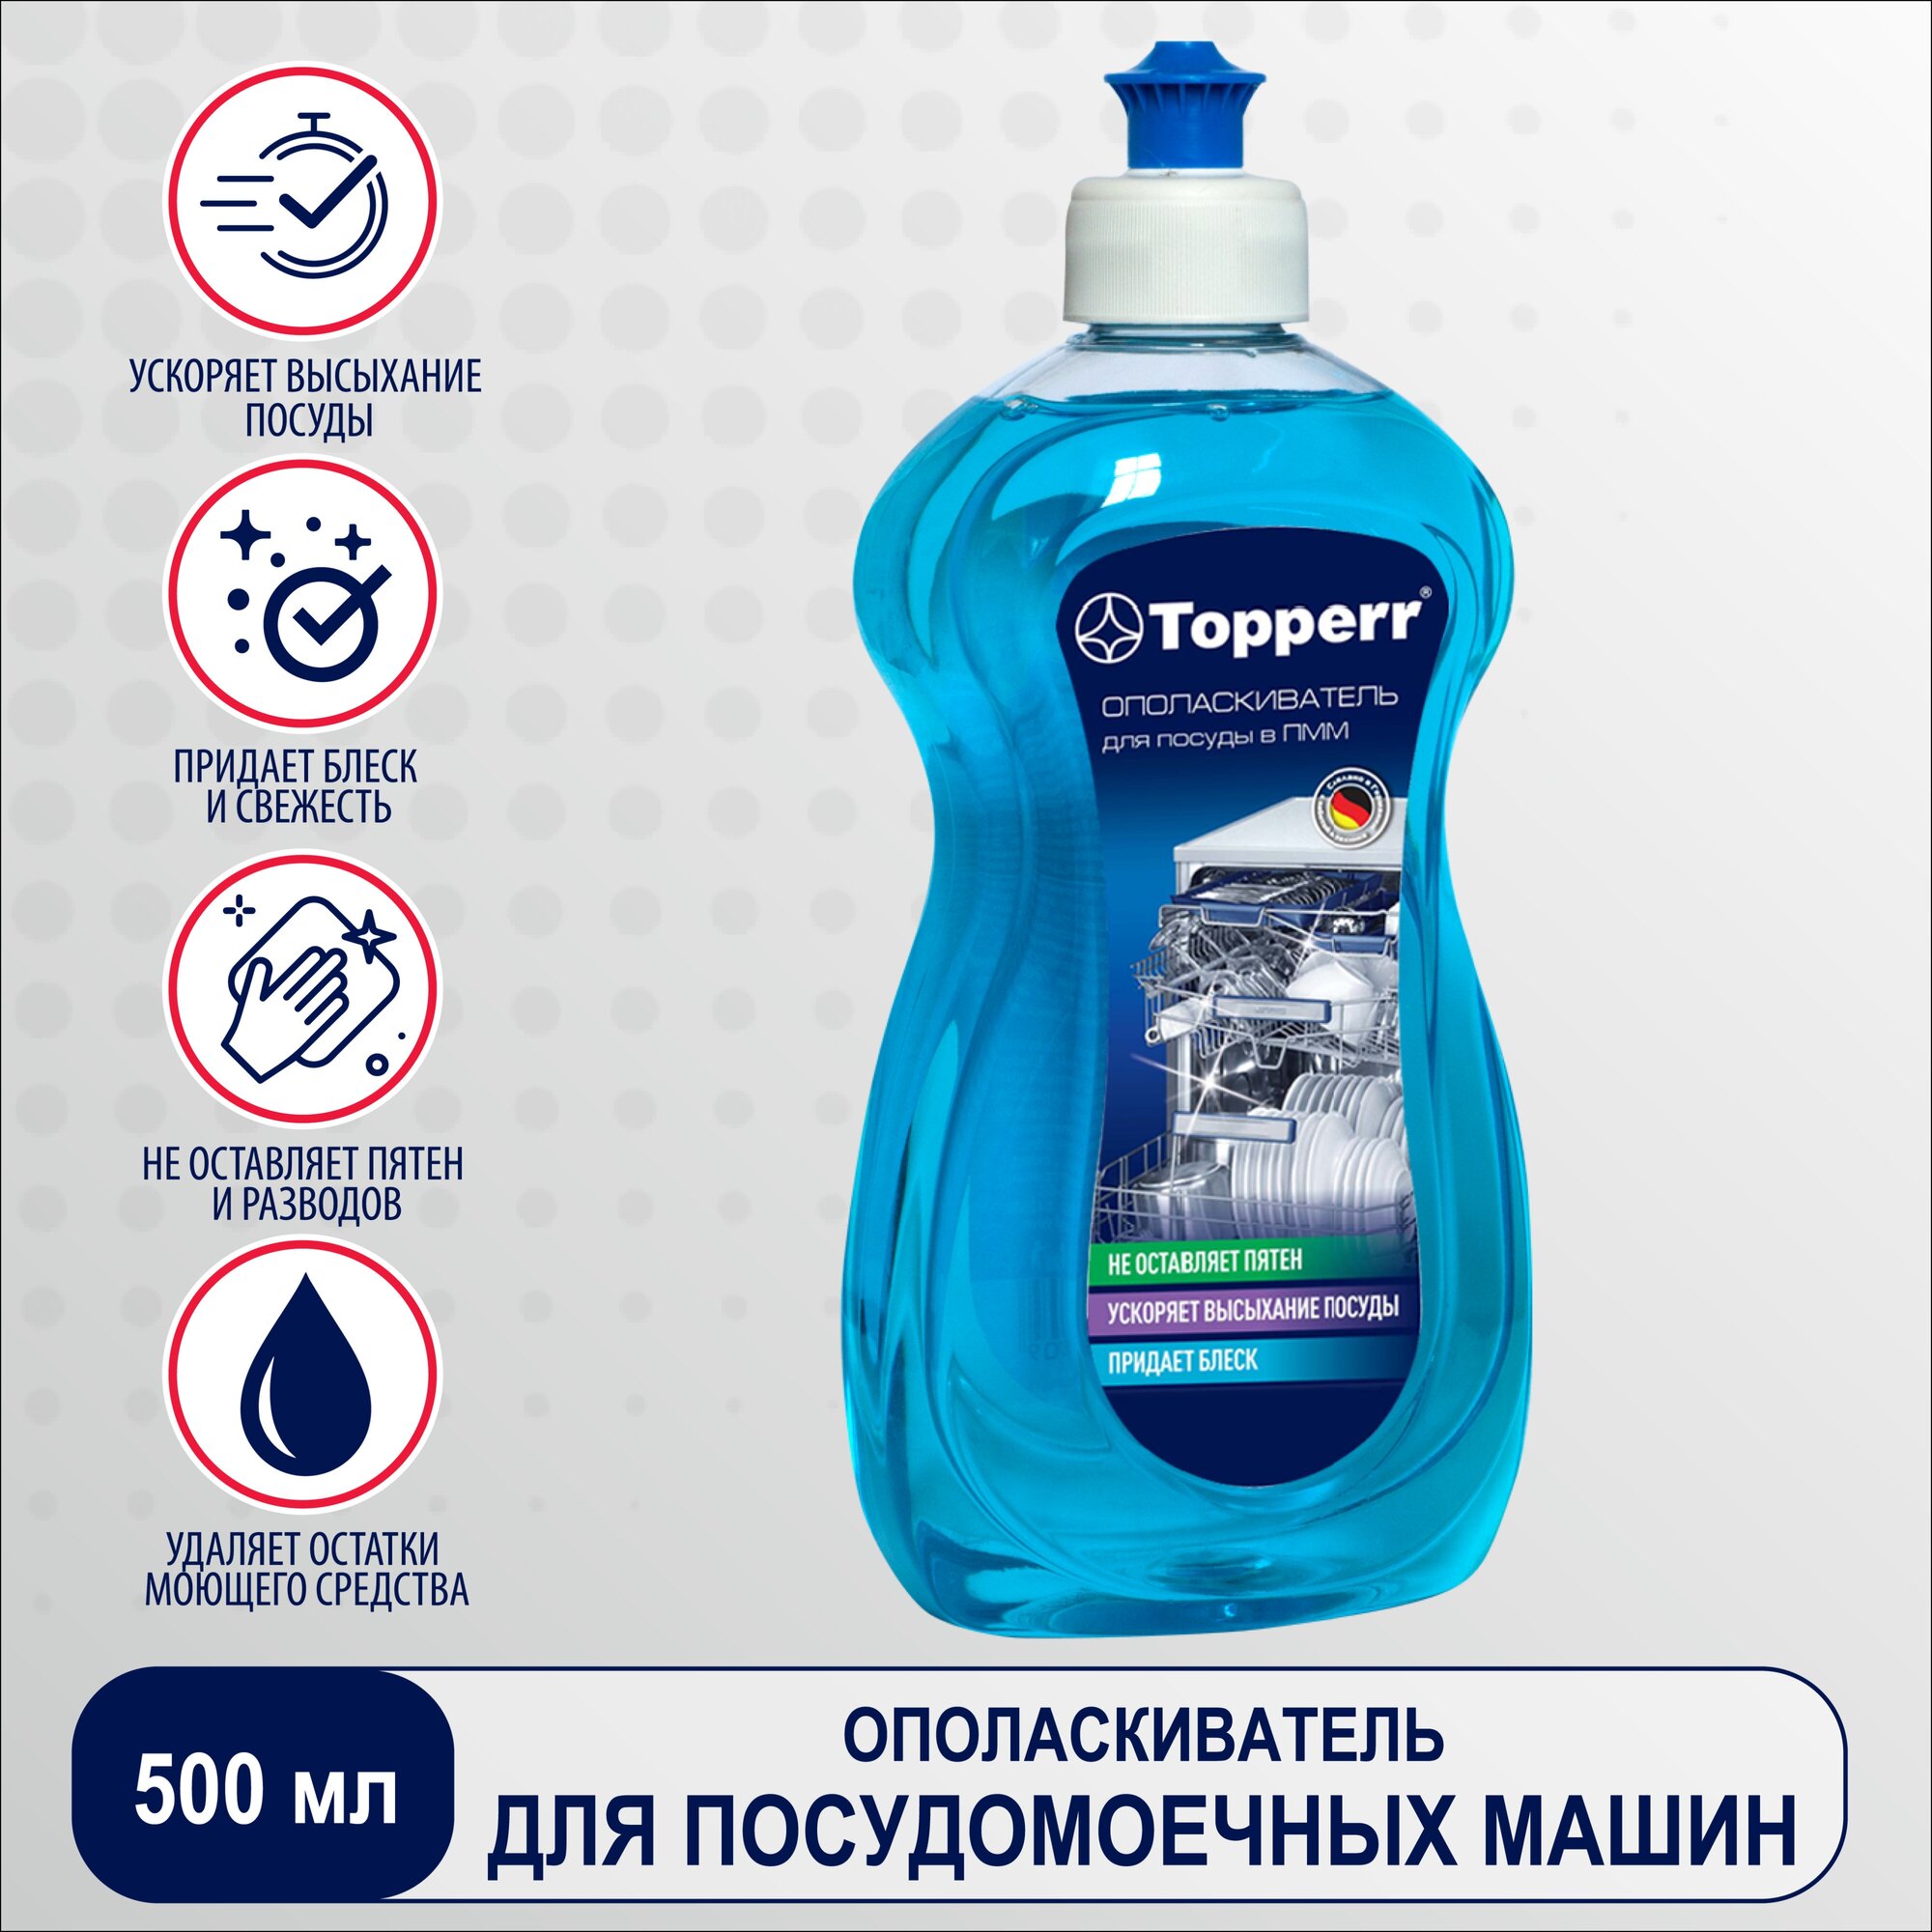 Topperr Ополаскиватель для посуды в посудомоечной машине 500 мл, 1 шт, 3301